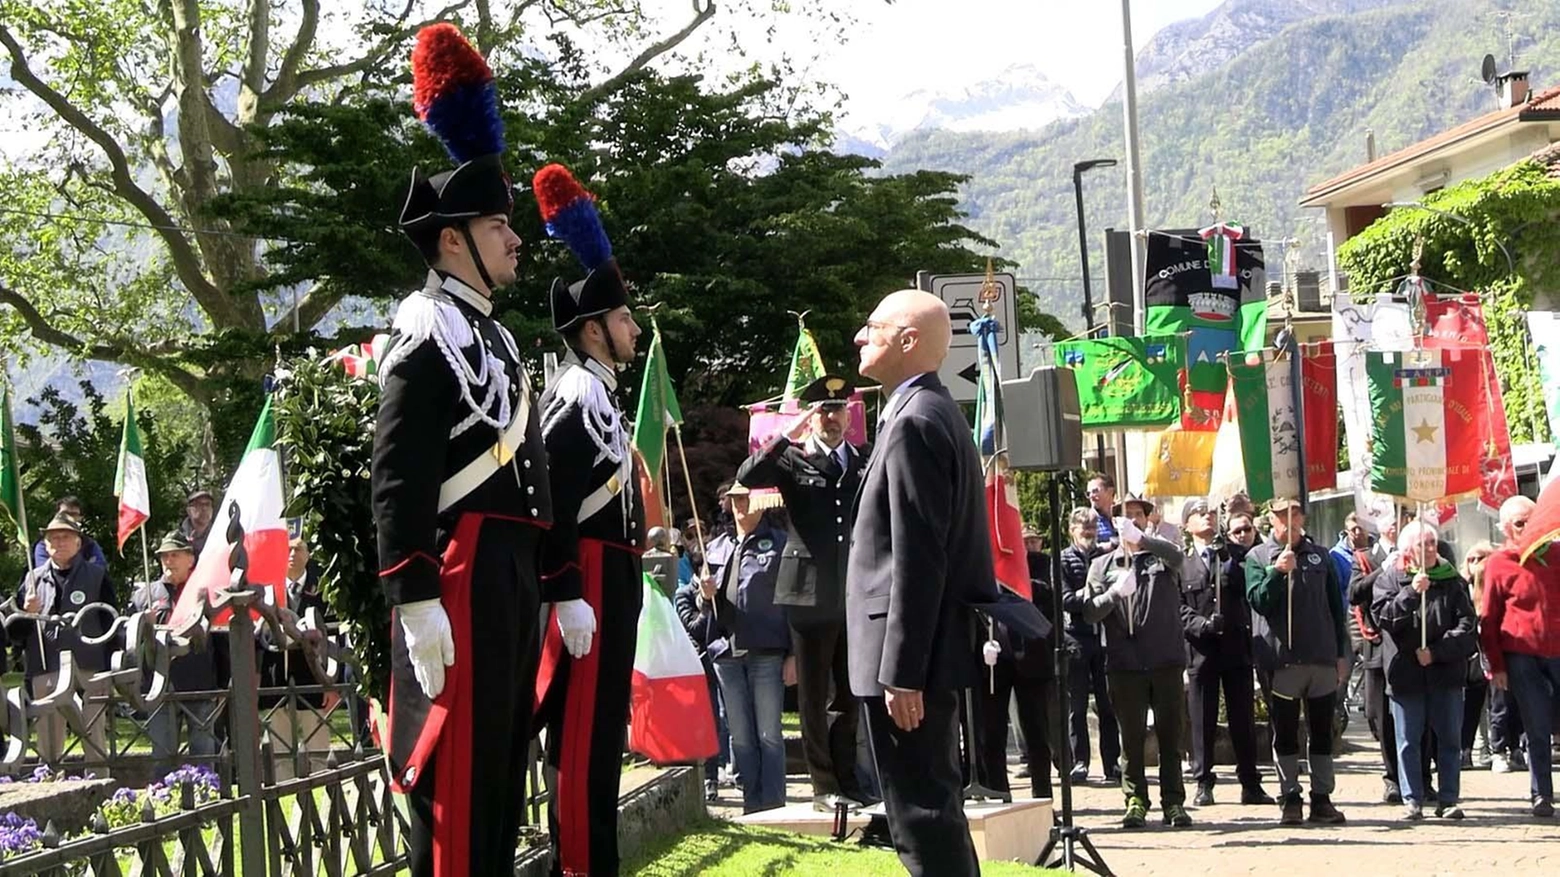 Celebrazioni per la festa della Liberazione a Sondrio e Chiavenna il 25 aprile: omaggi ai caduti partigiani e appello all'impegno per preservare i valori della libertà.